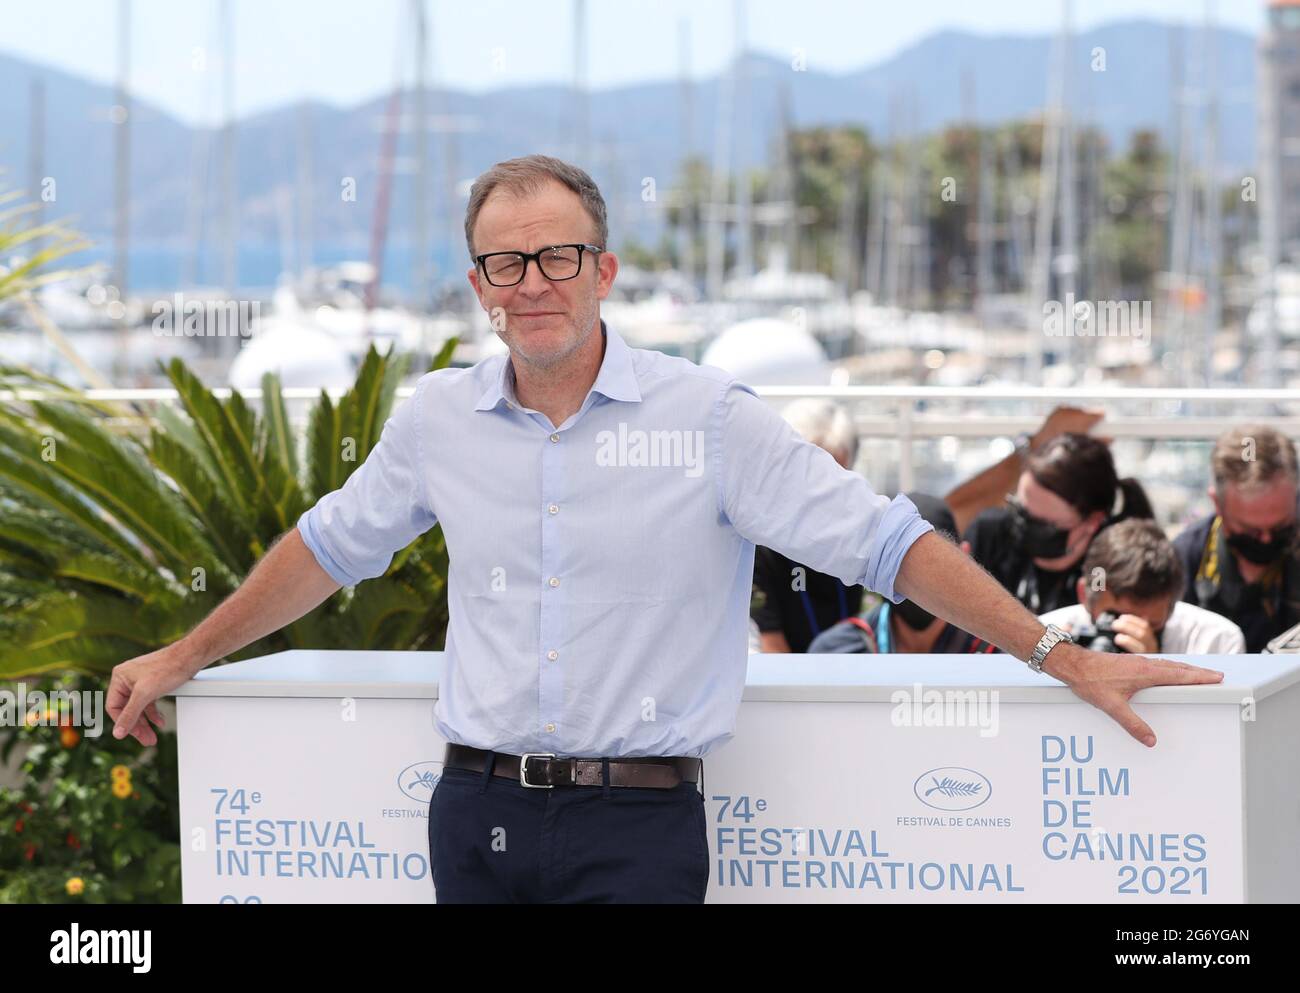 Cannes, France. 9 juillet 2021. Le réalisateur américain Tom McCarthy pose lors d'une séance photo pour le film "Stillwater" lors de la 74e édition du Festival de Cannes à Cannes, dans le sud de la France, le 9 juillet 2021. Credit: Gao Jing/Xinhua/Alamy Live News Banque D'Images